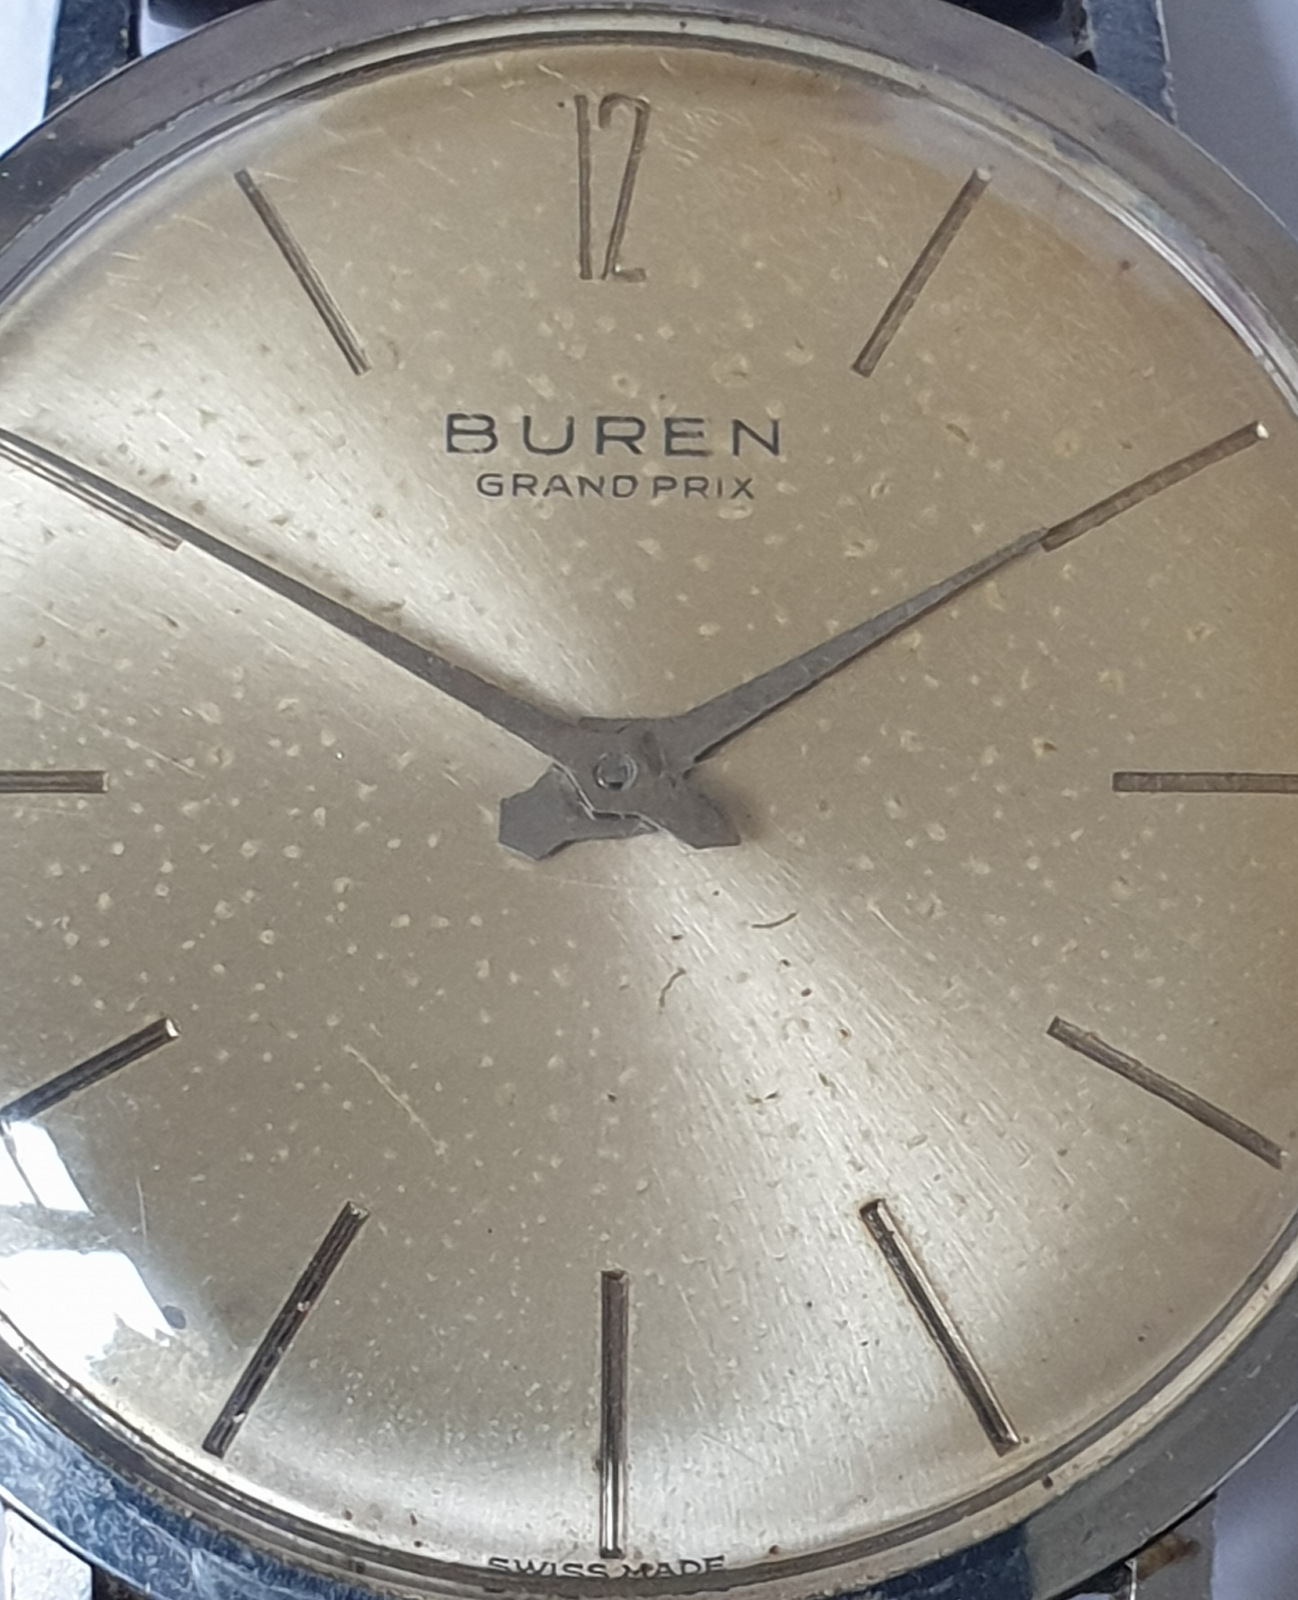 Buren Grand Prix Gent's Wristwatch - Image 5 of 5